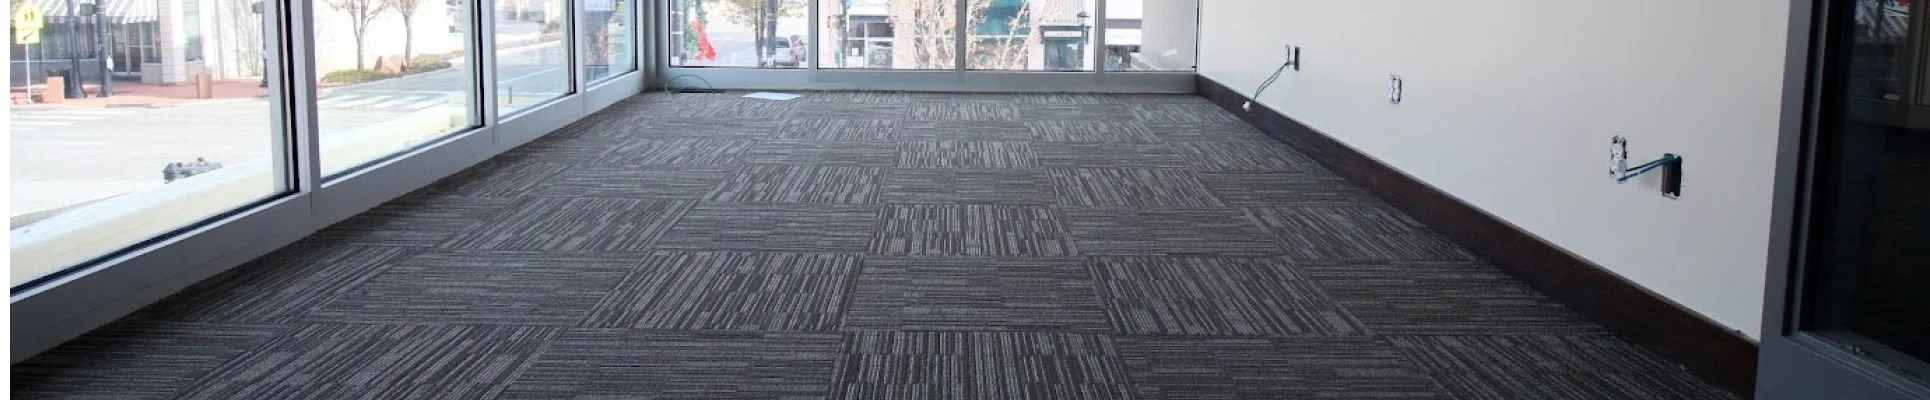 Commercial flooring installation in Utah